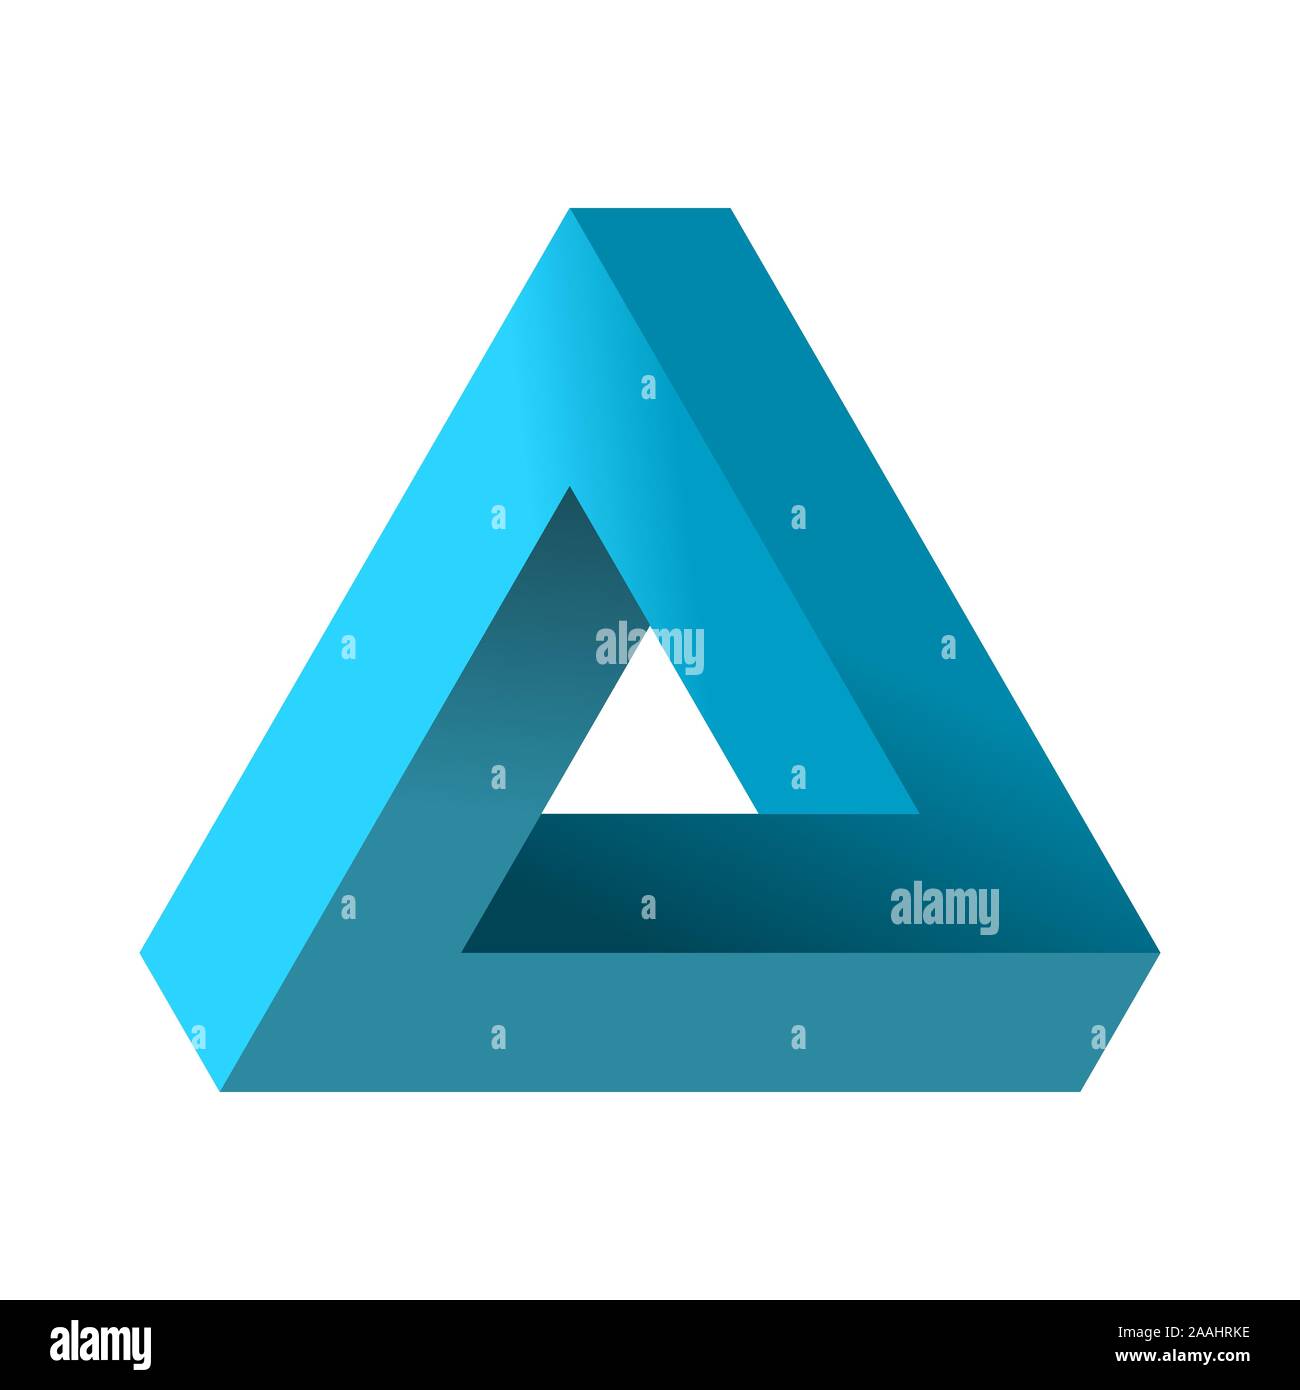 Impossible triangle. Penrose illusion d'optique. Dégradé bleu forme triangulaire sans fin. Résumé de l'objet géométrique infinie. Impossible figure éternelle. Illustration de Vecteur